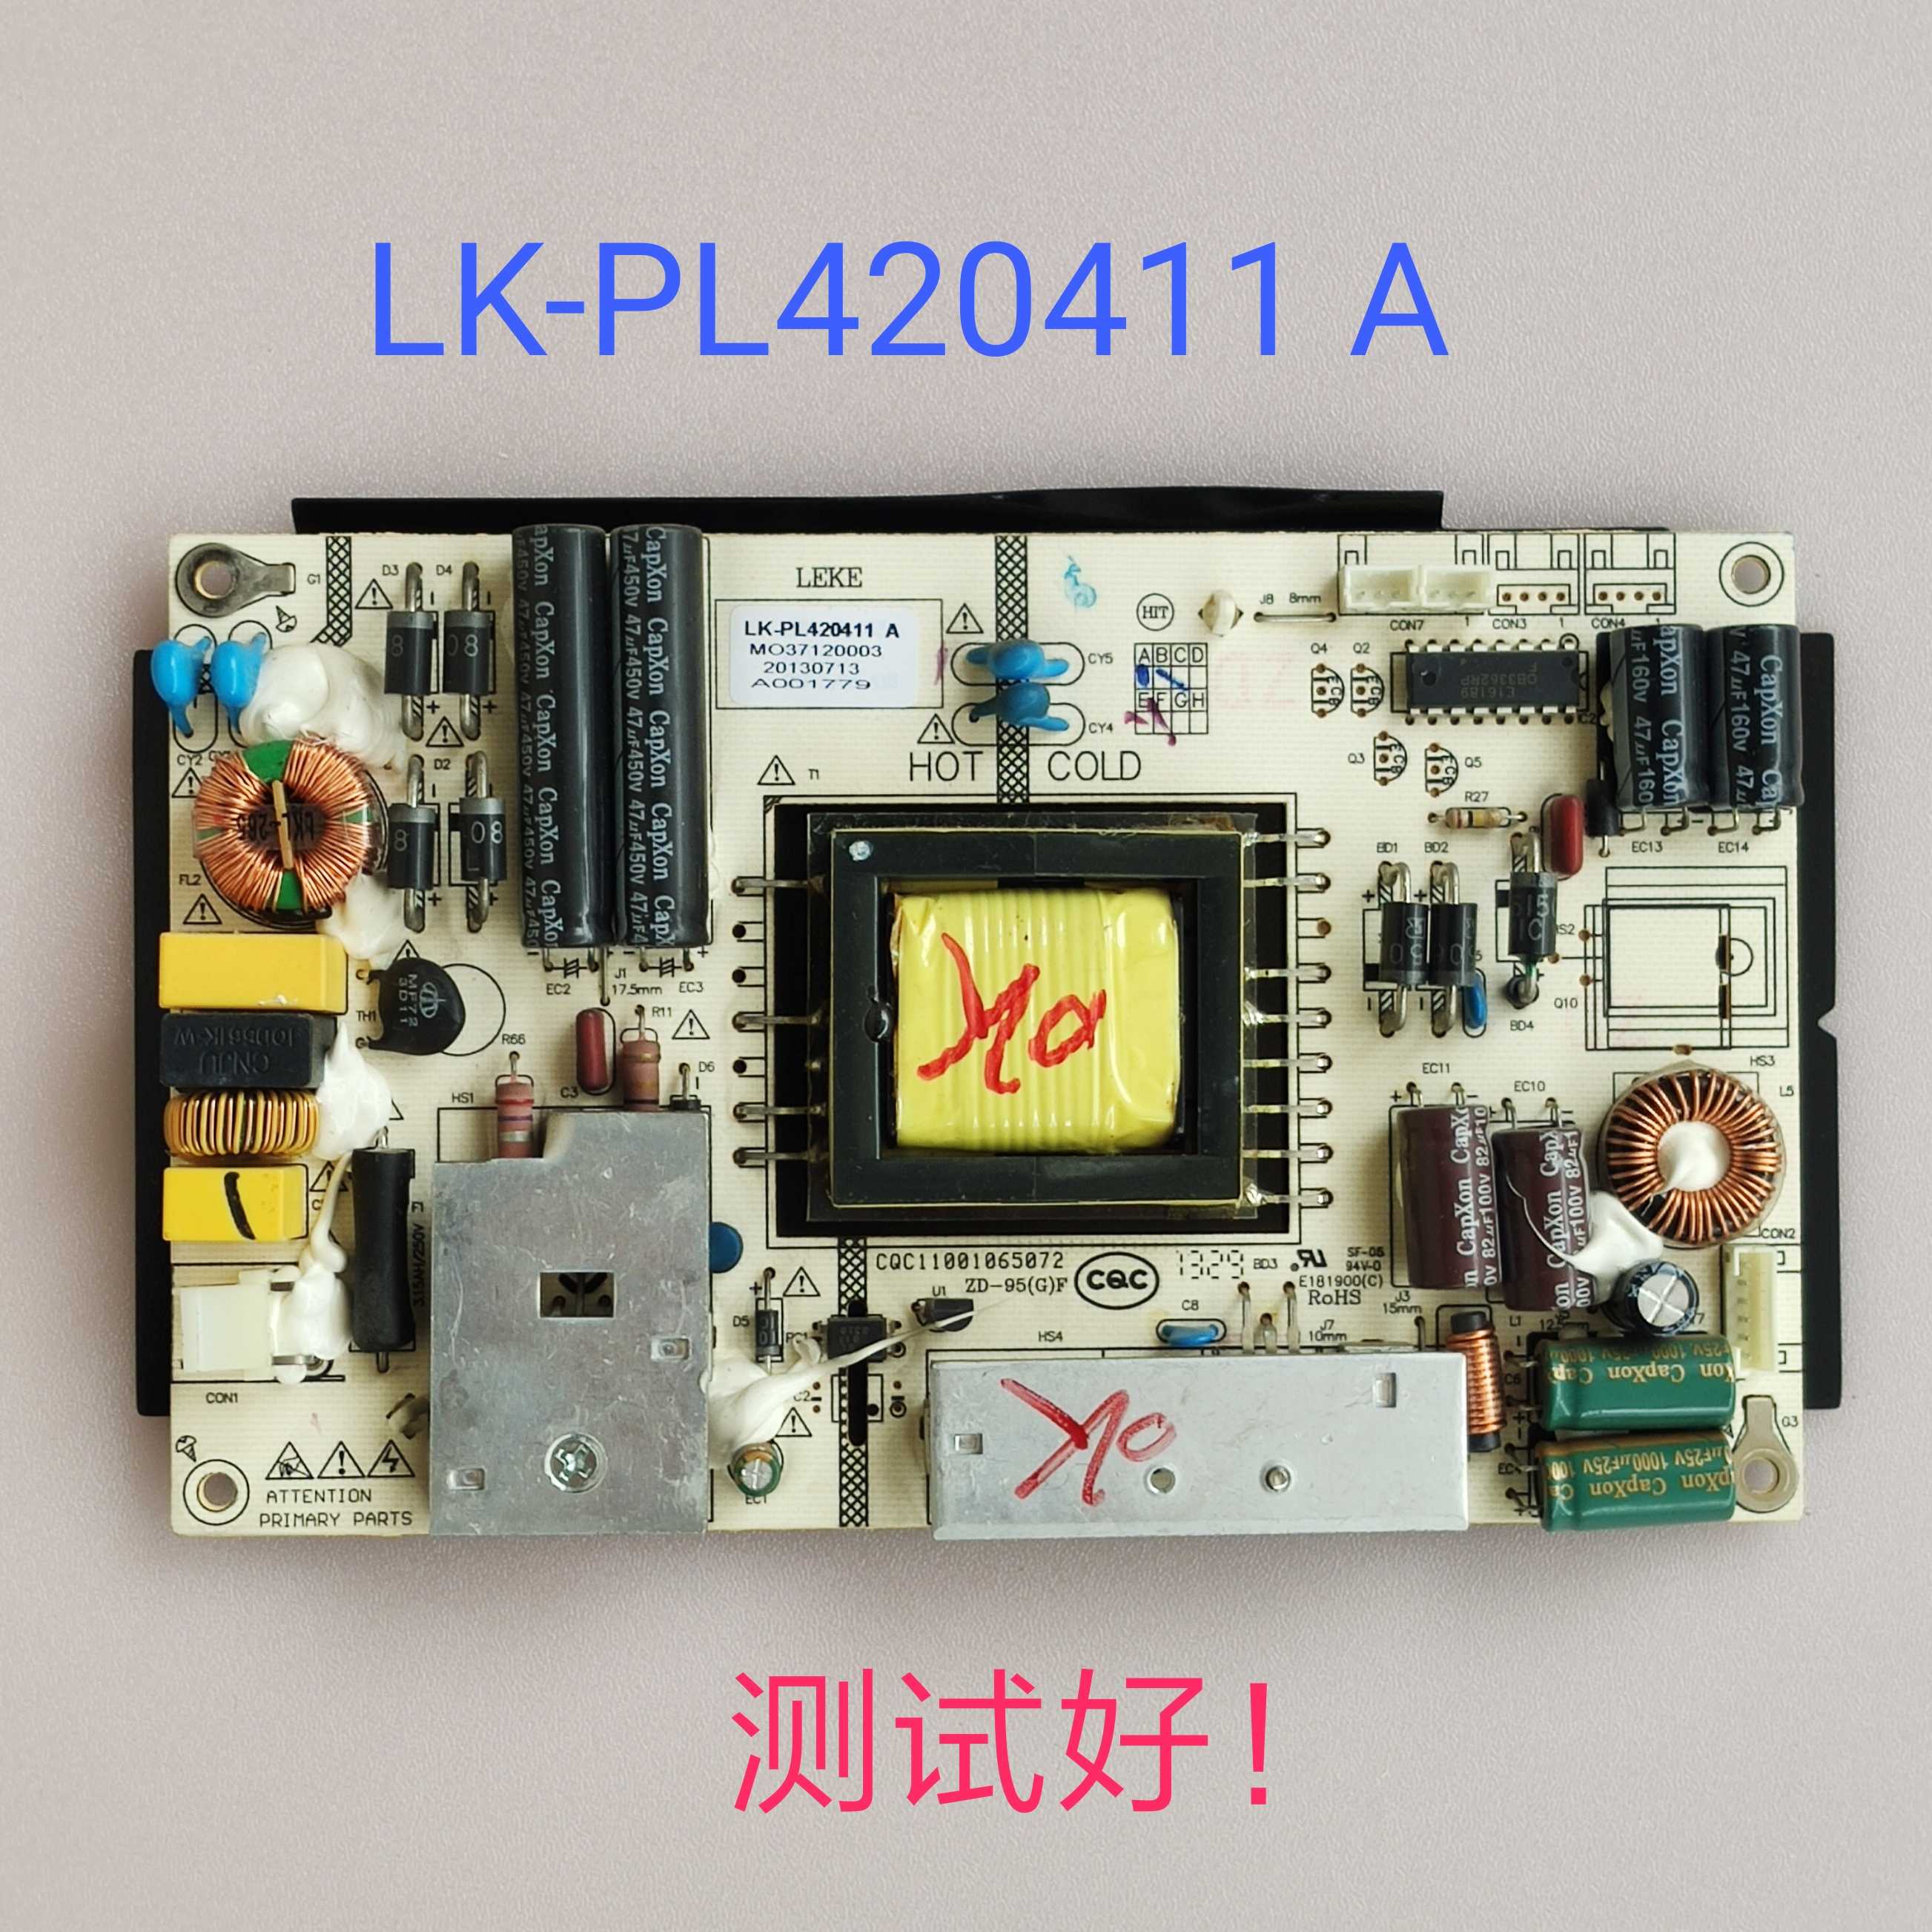 清华同方LE-42TM2200 电源板LK-PL420411 A 42TL2600D 42TM1900D 电子元器件市场 显示屏/LCD液晶屏/LED屏/TFT屏 原图主图